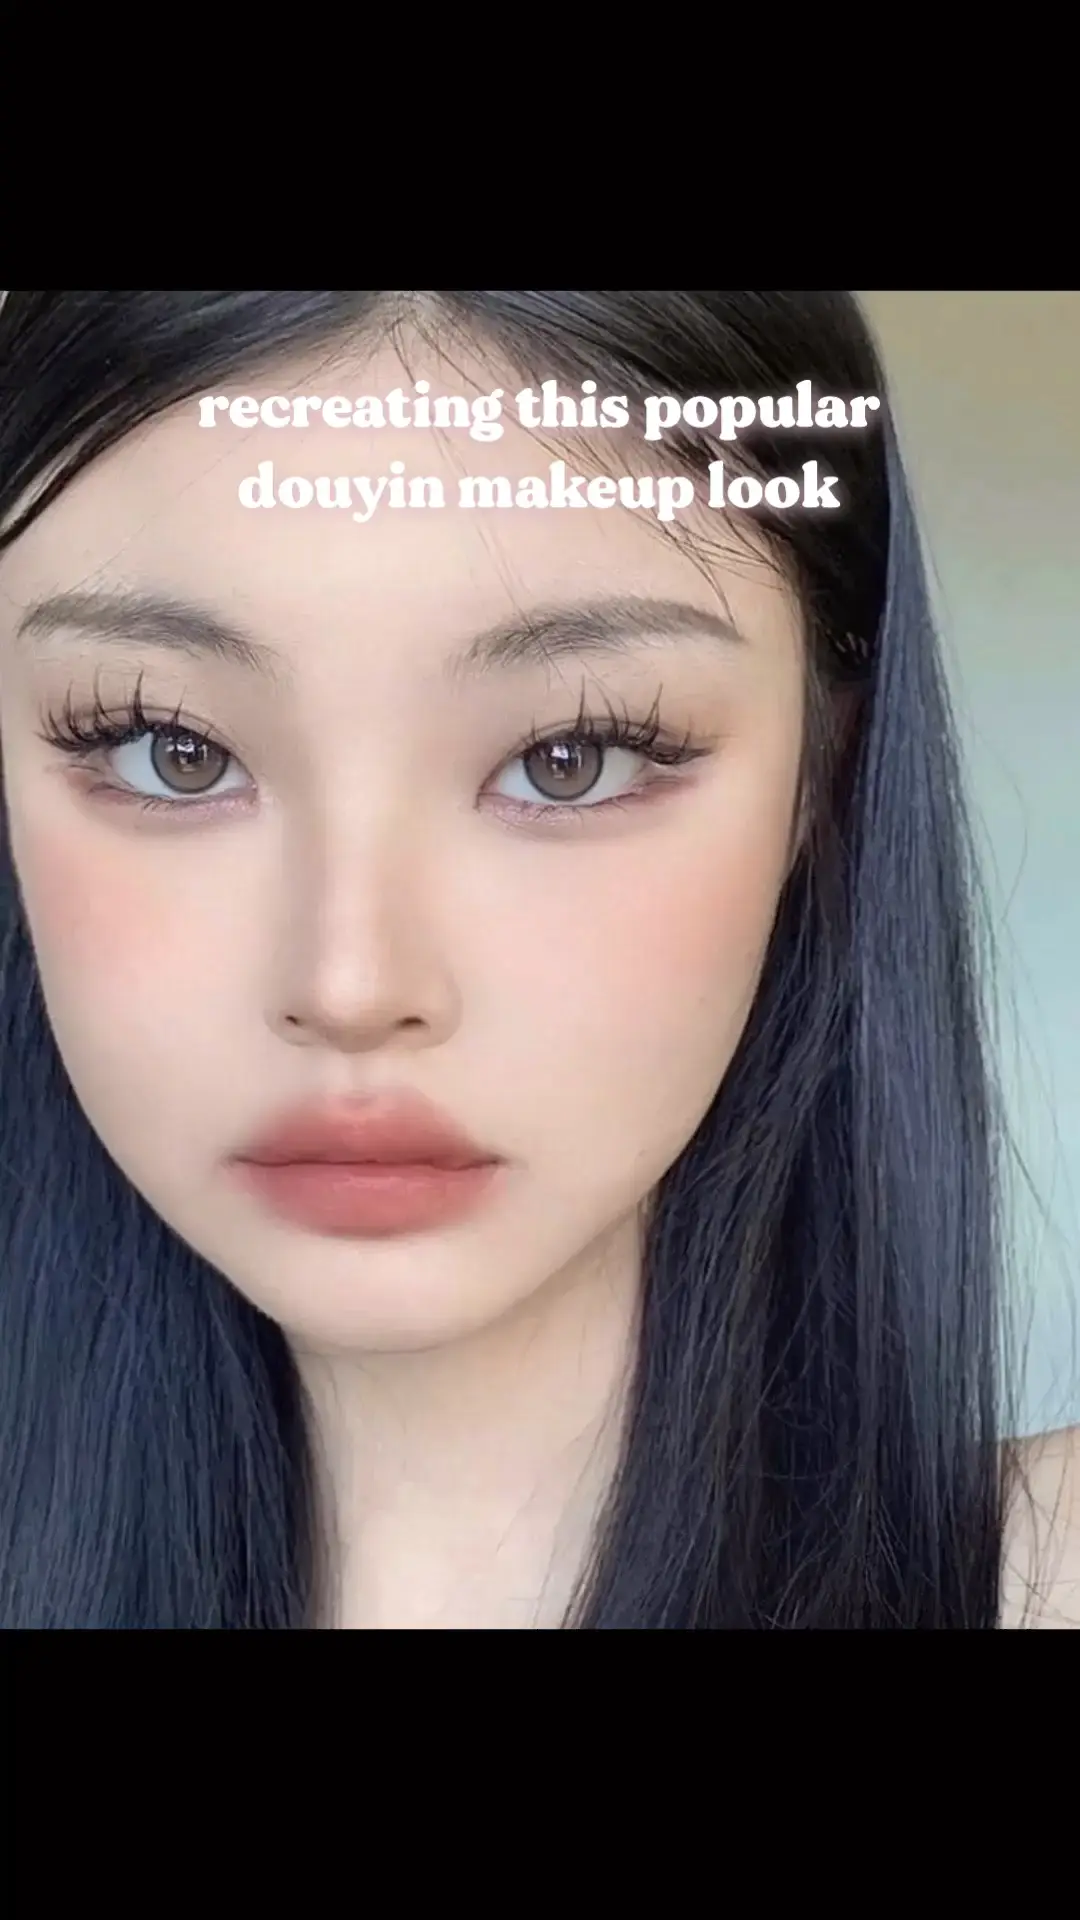 I ❤️ makeup